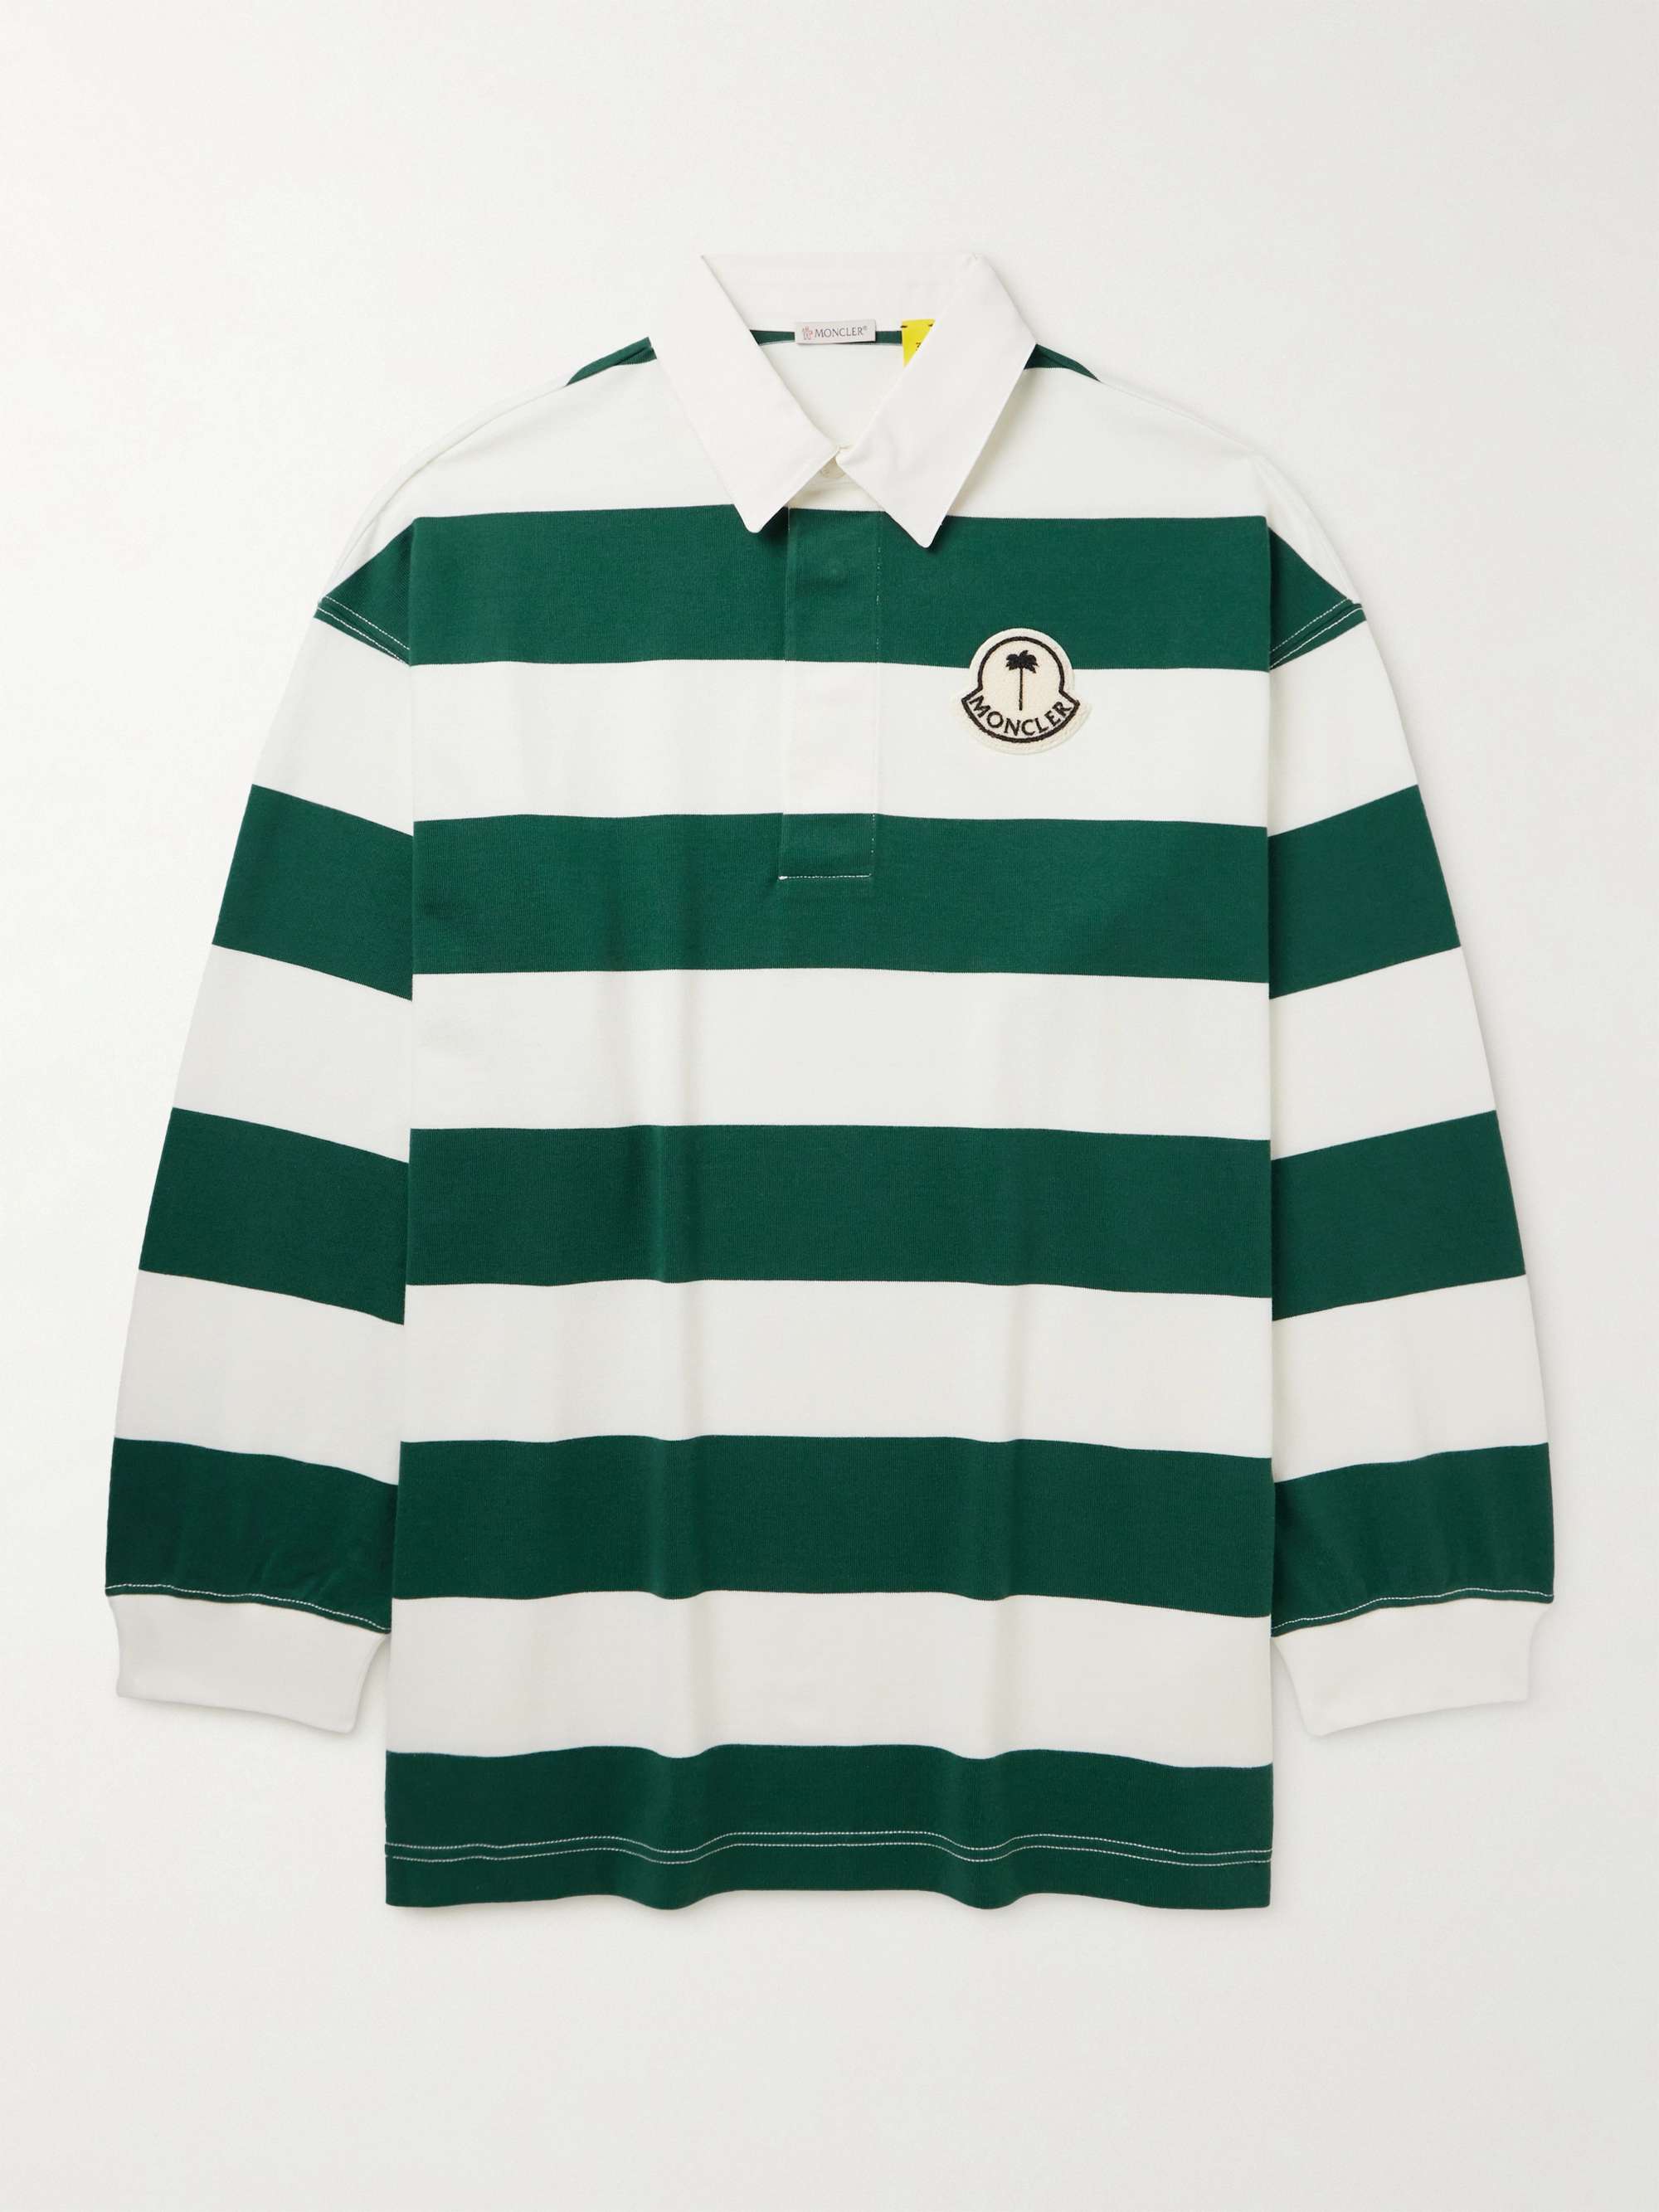 MONCLER GENIUS + Palm Angels Oversized Logo-Appliquéd Cotton-Jersey Polo  Shirt for Men | MR PORTER